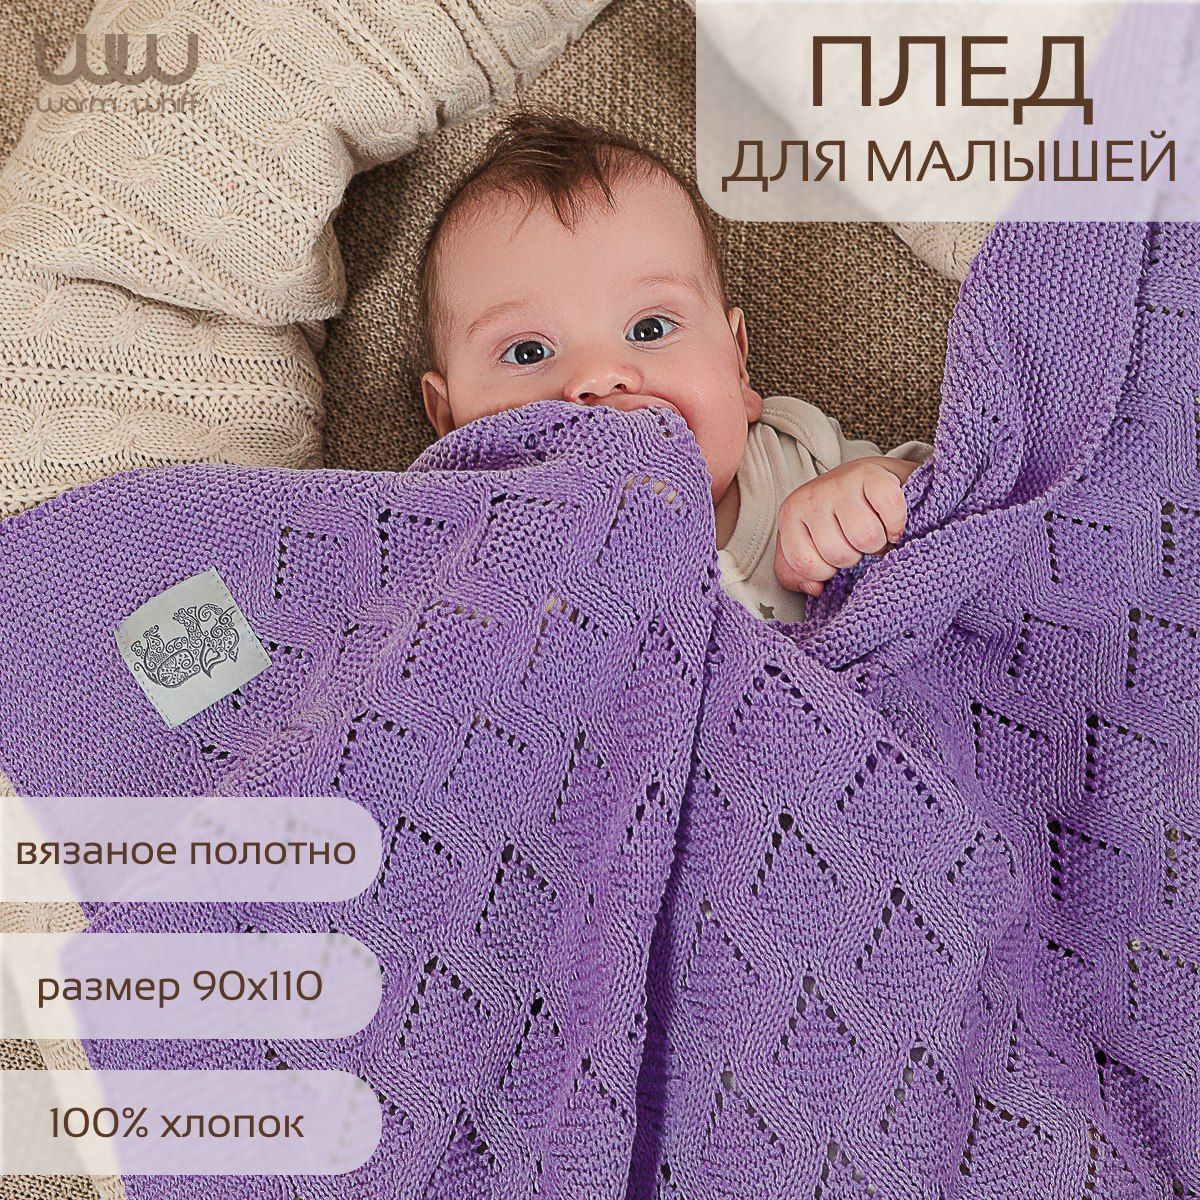 Стоковые видео по запросу Спящий малыш одеяло